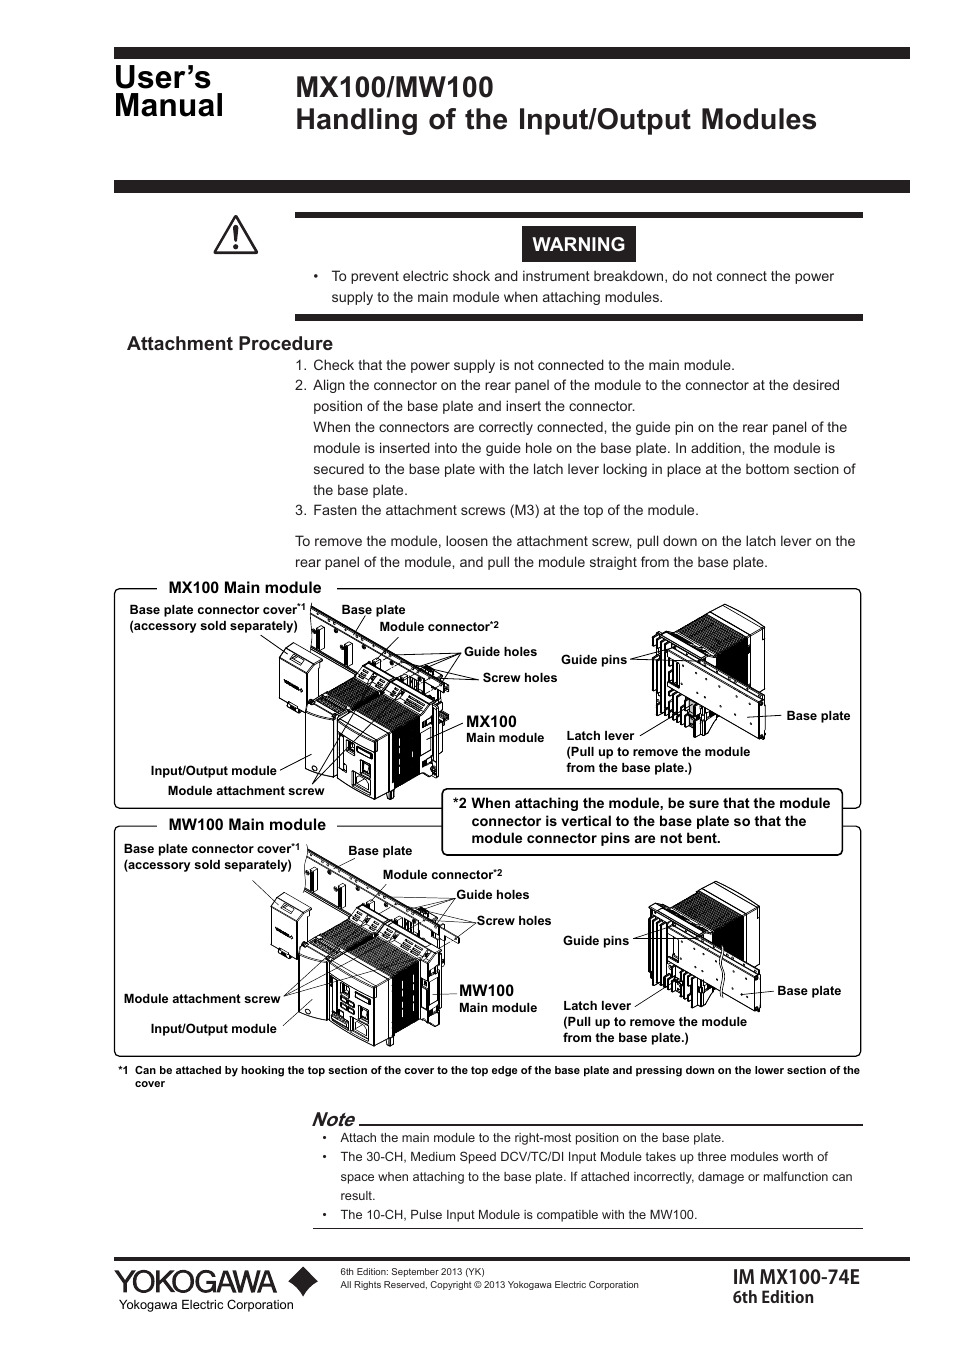 Yokogawa PC-Based MX100 User Manual | 4 pages